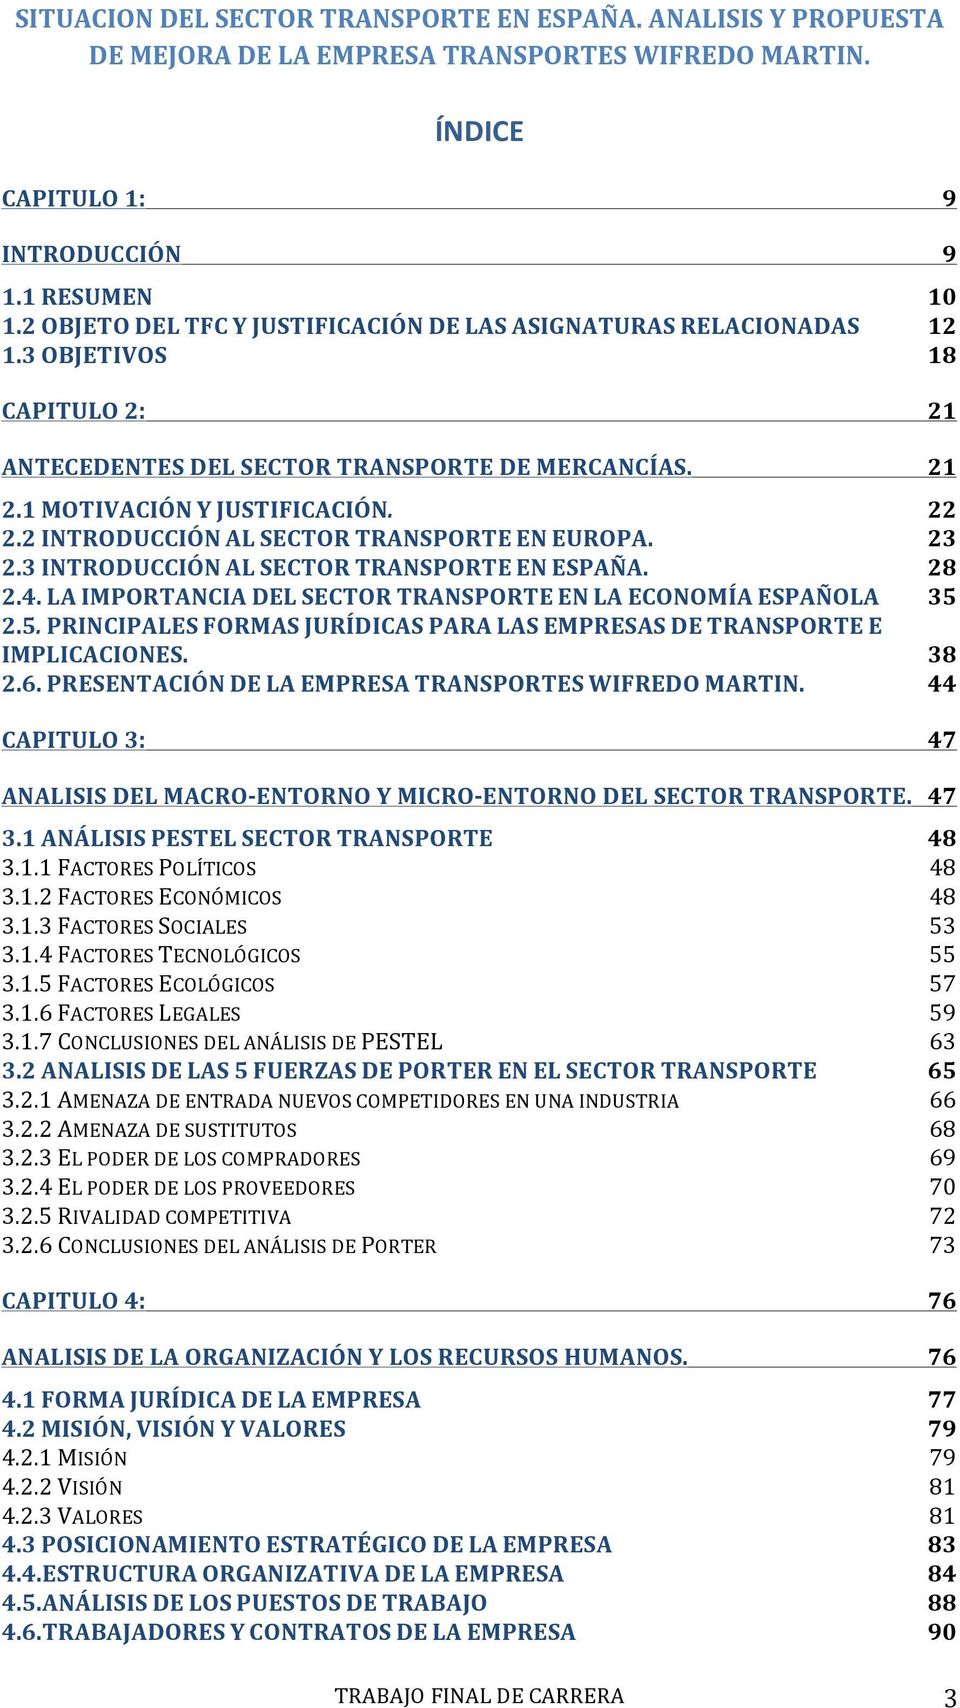 Situacion Del Sector Transporte En Espana Analisis Y Propuesta